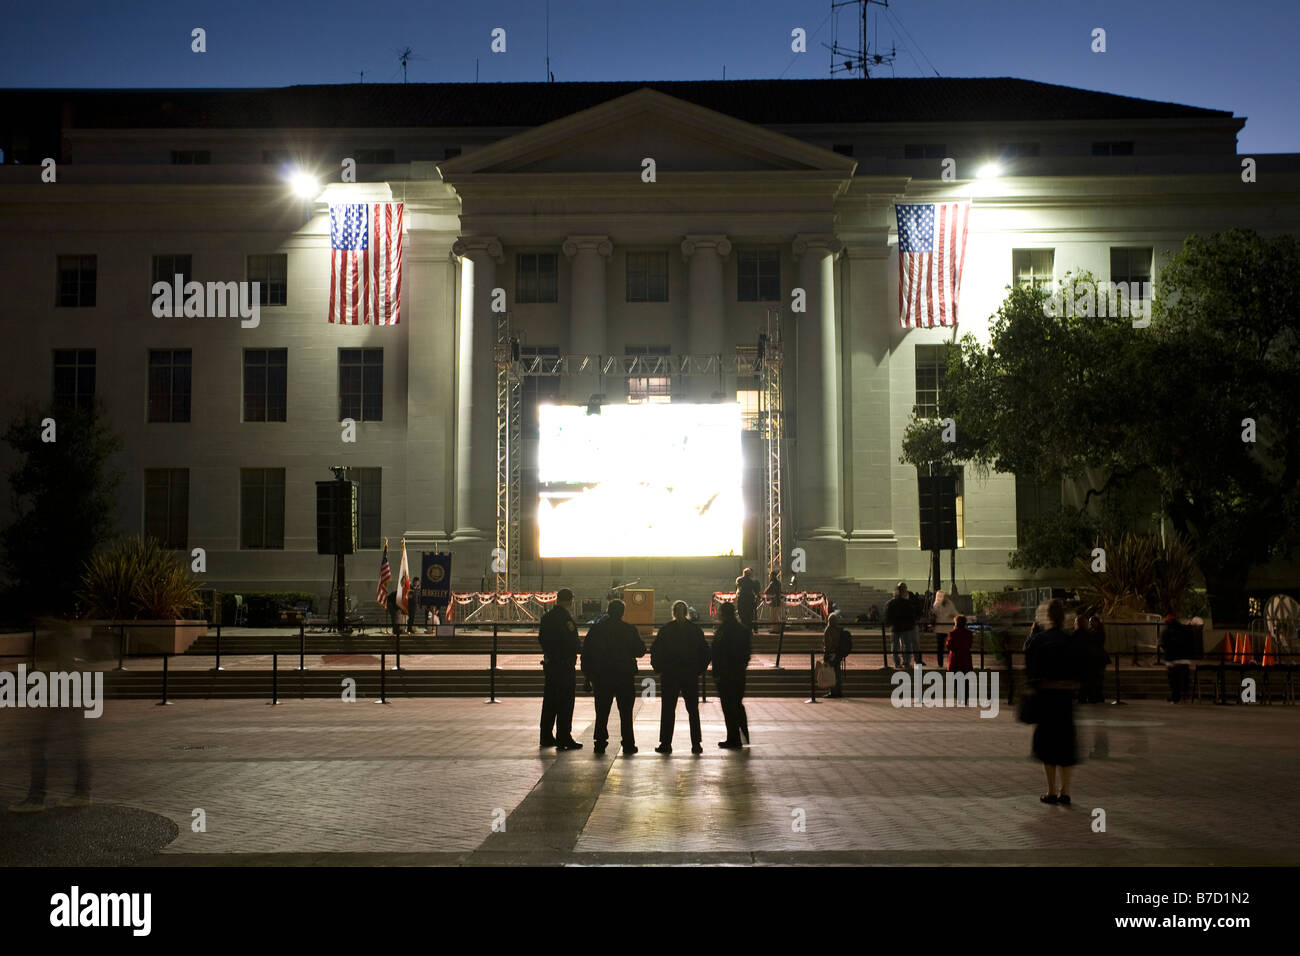 La police de l'université de Californie regarder les événements pré-inauguration sur le jumbotron UC Berkeley comme personnel de se préparer à la foule. Banque D'Images